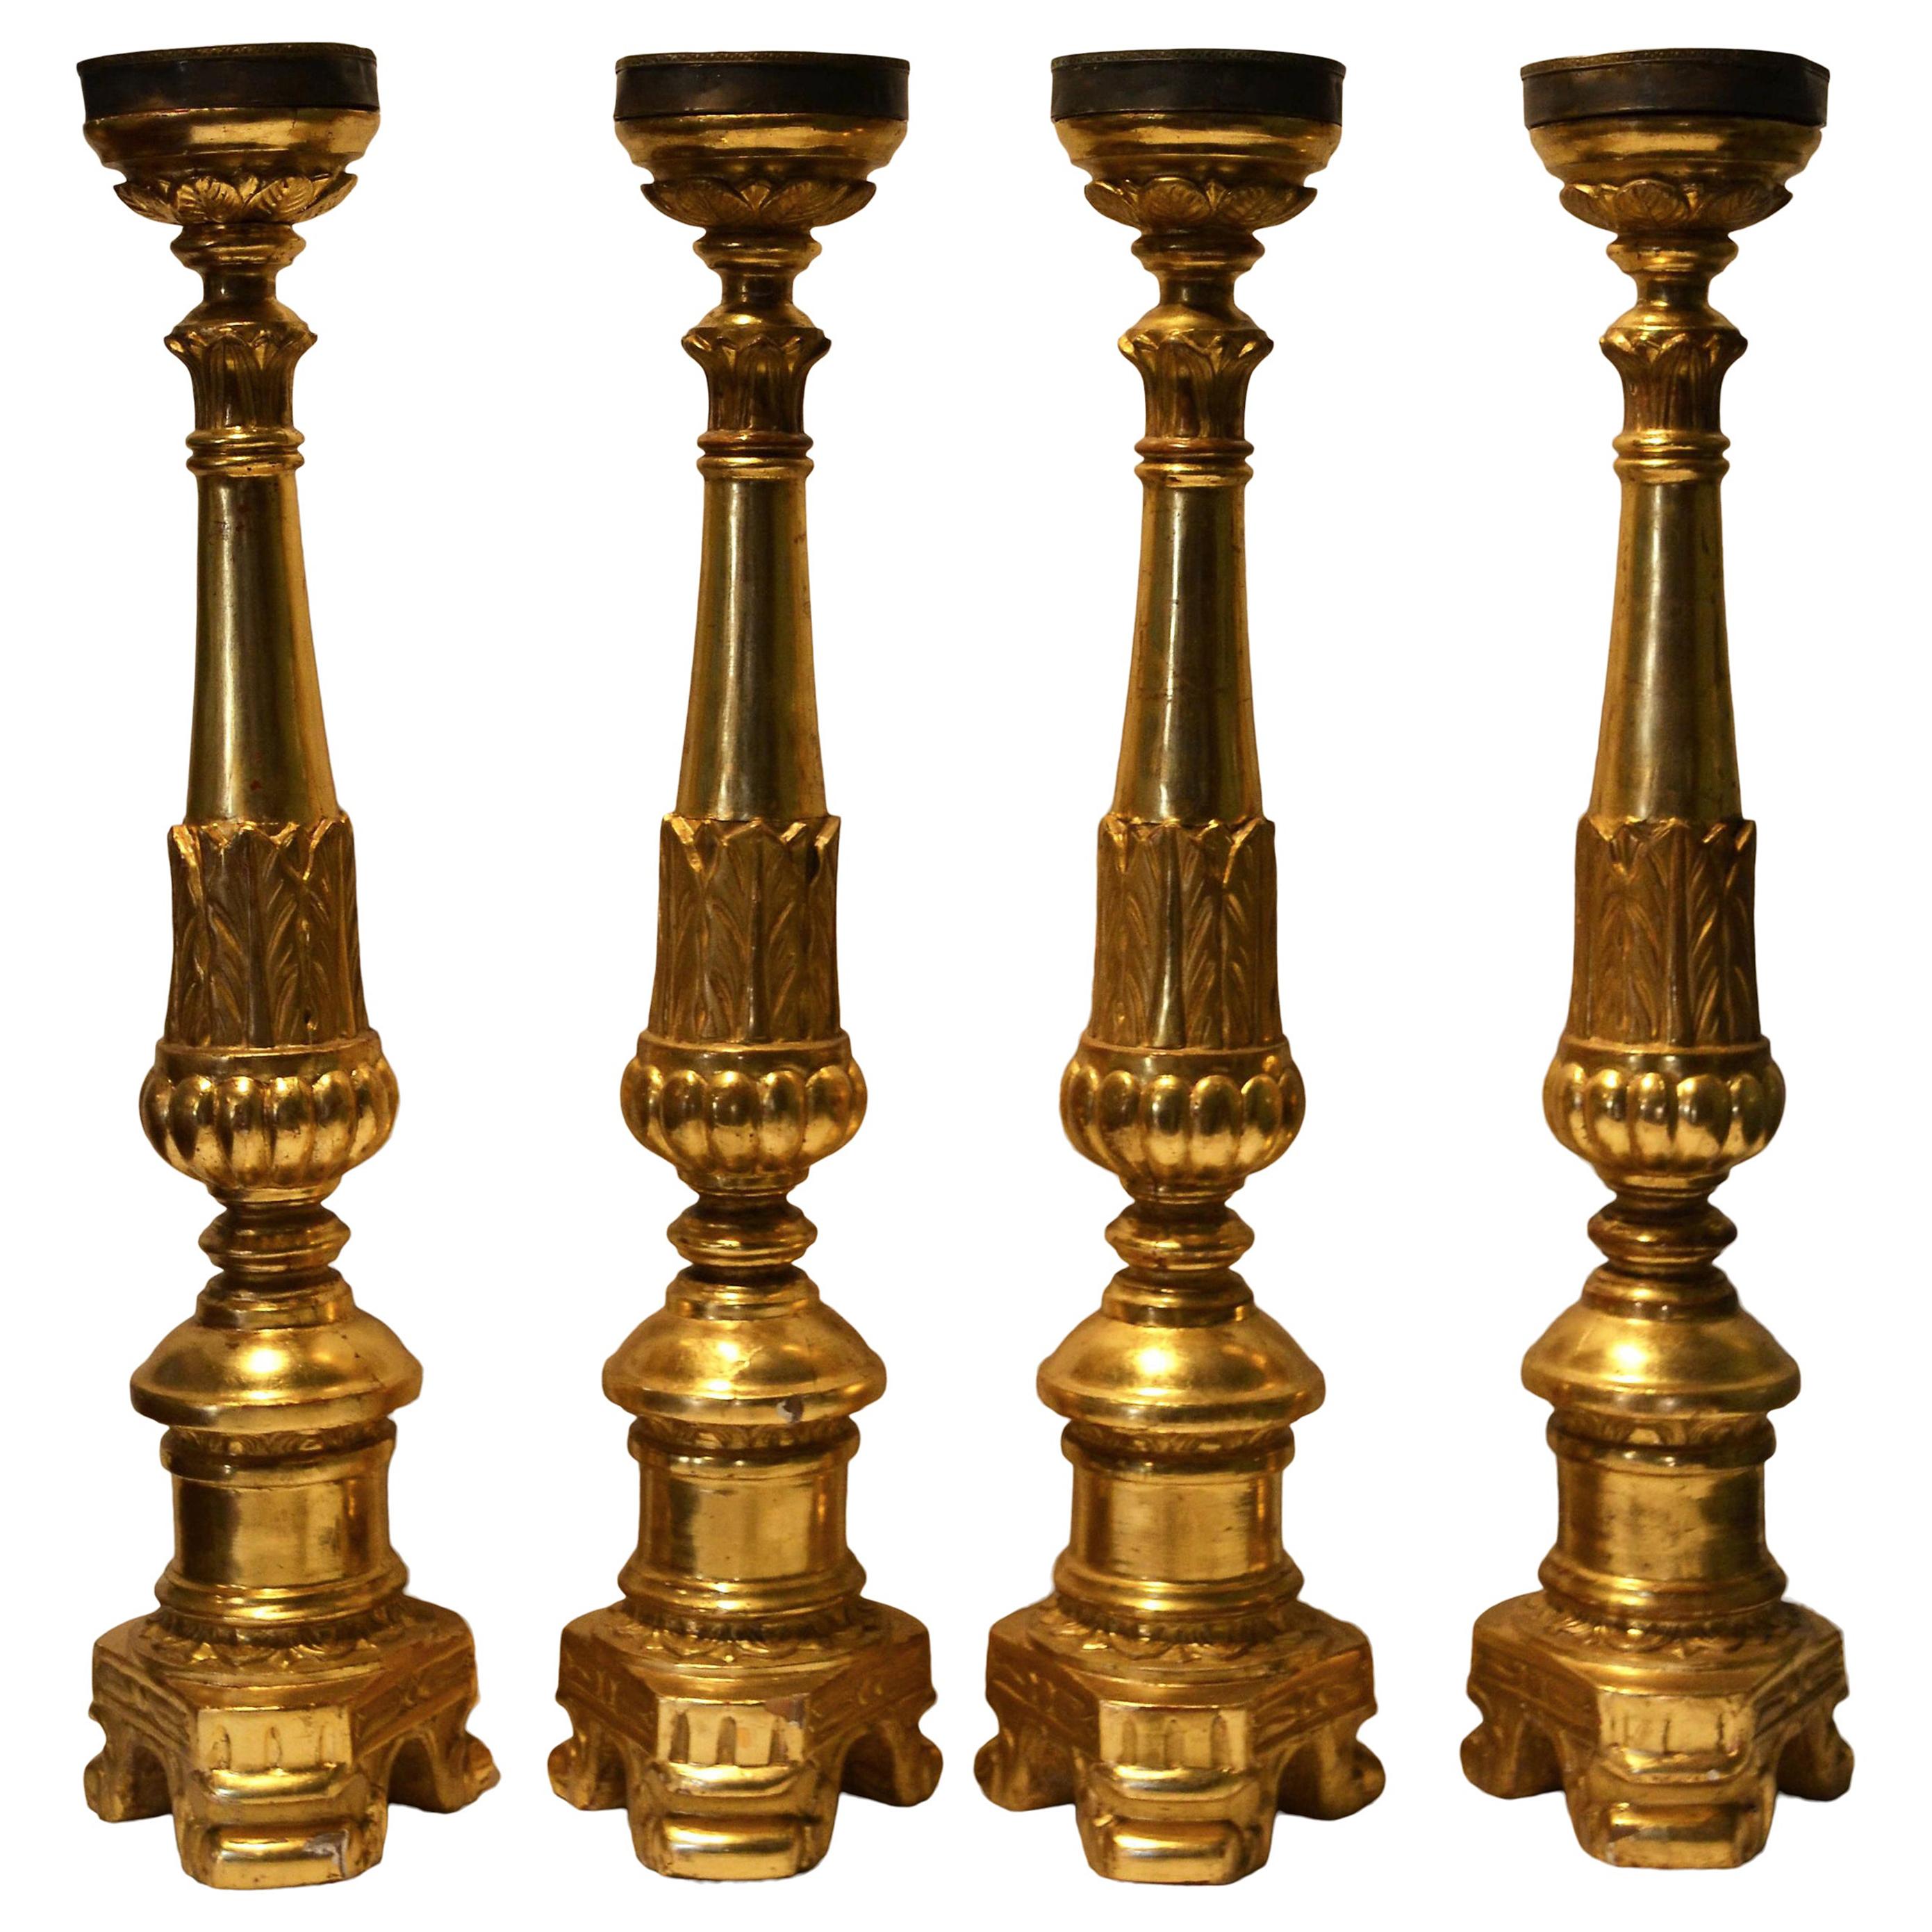 Ensemble de quatre bougeoirs de cathédrale français anciens en bois doré sculpté, vers 1860.